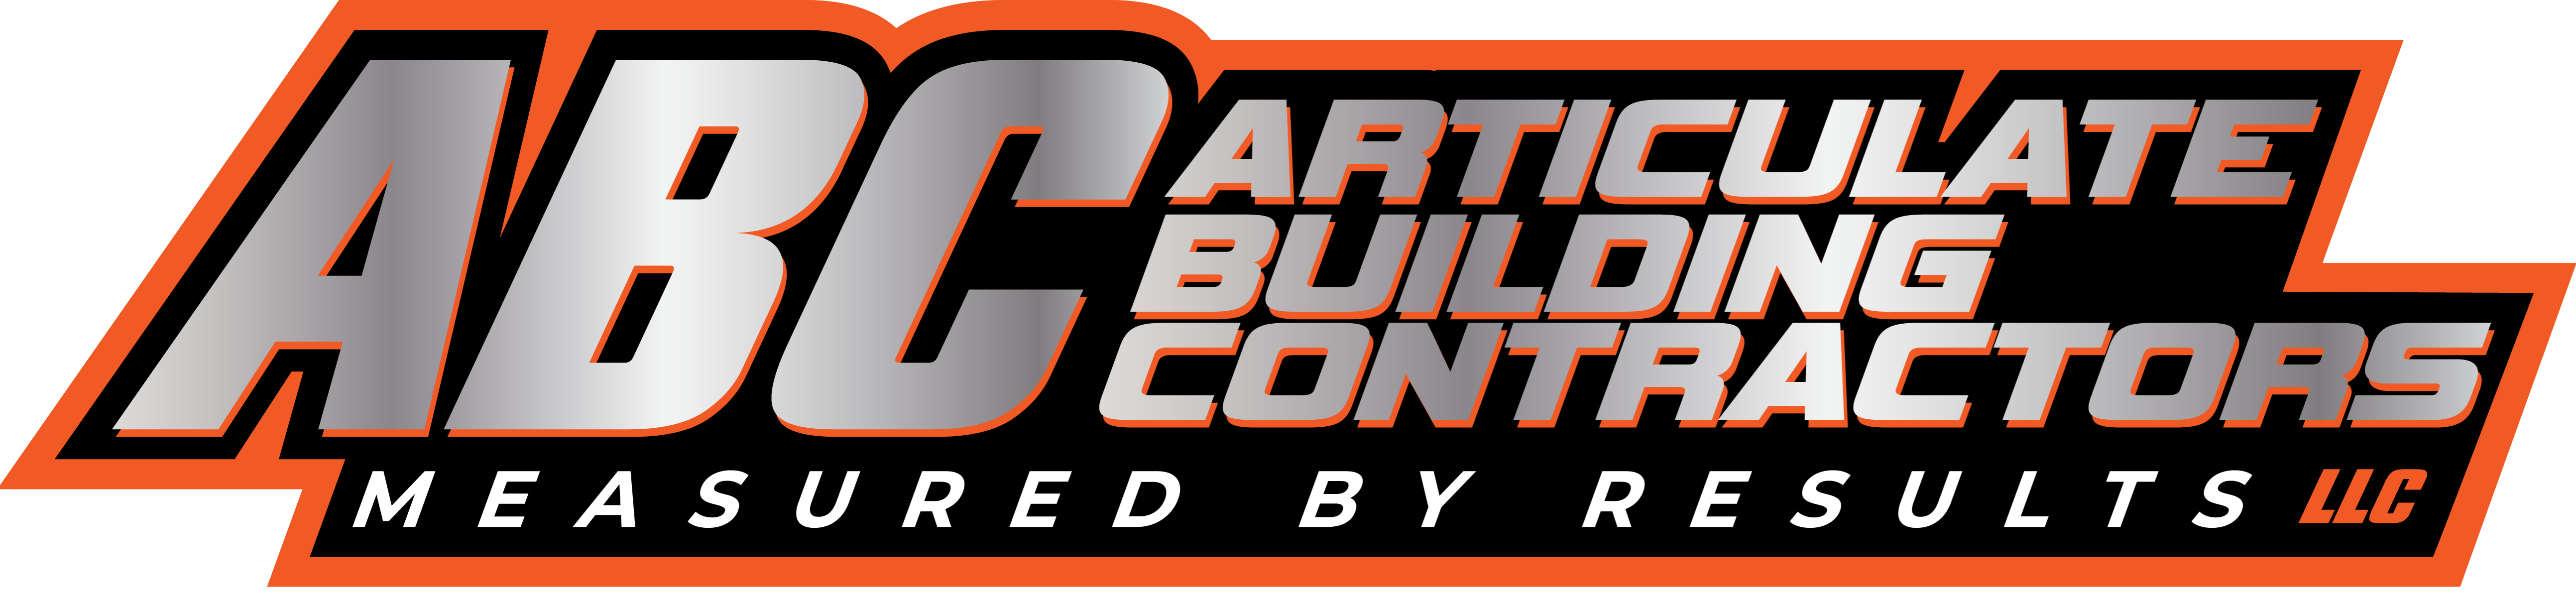 Articulate Building Contractors LLC. Logo